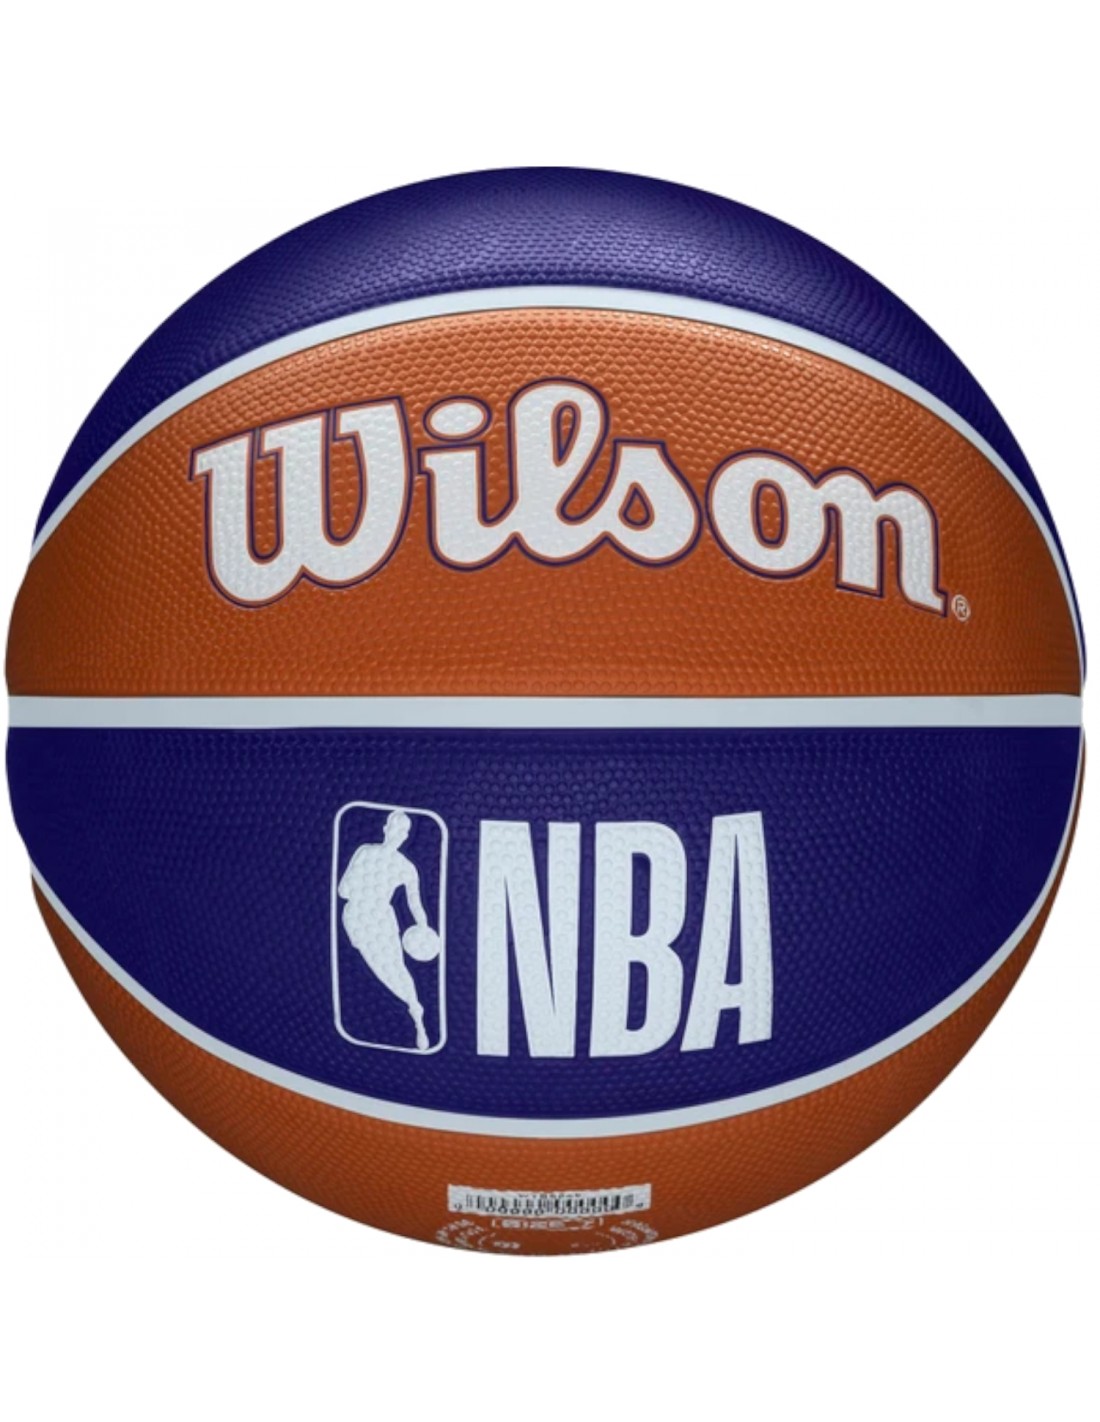 Wilson NBA Ball. Sunned balls